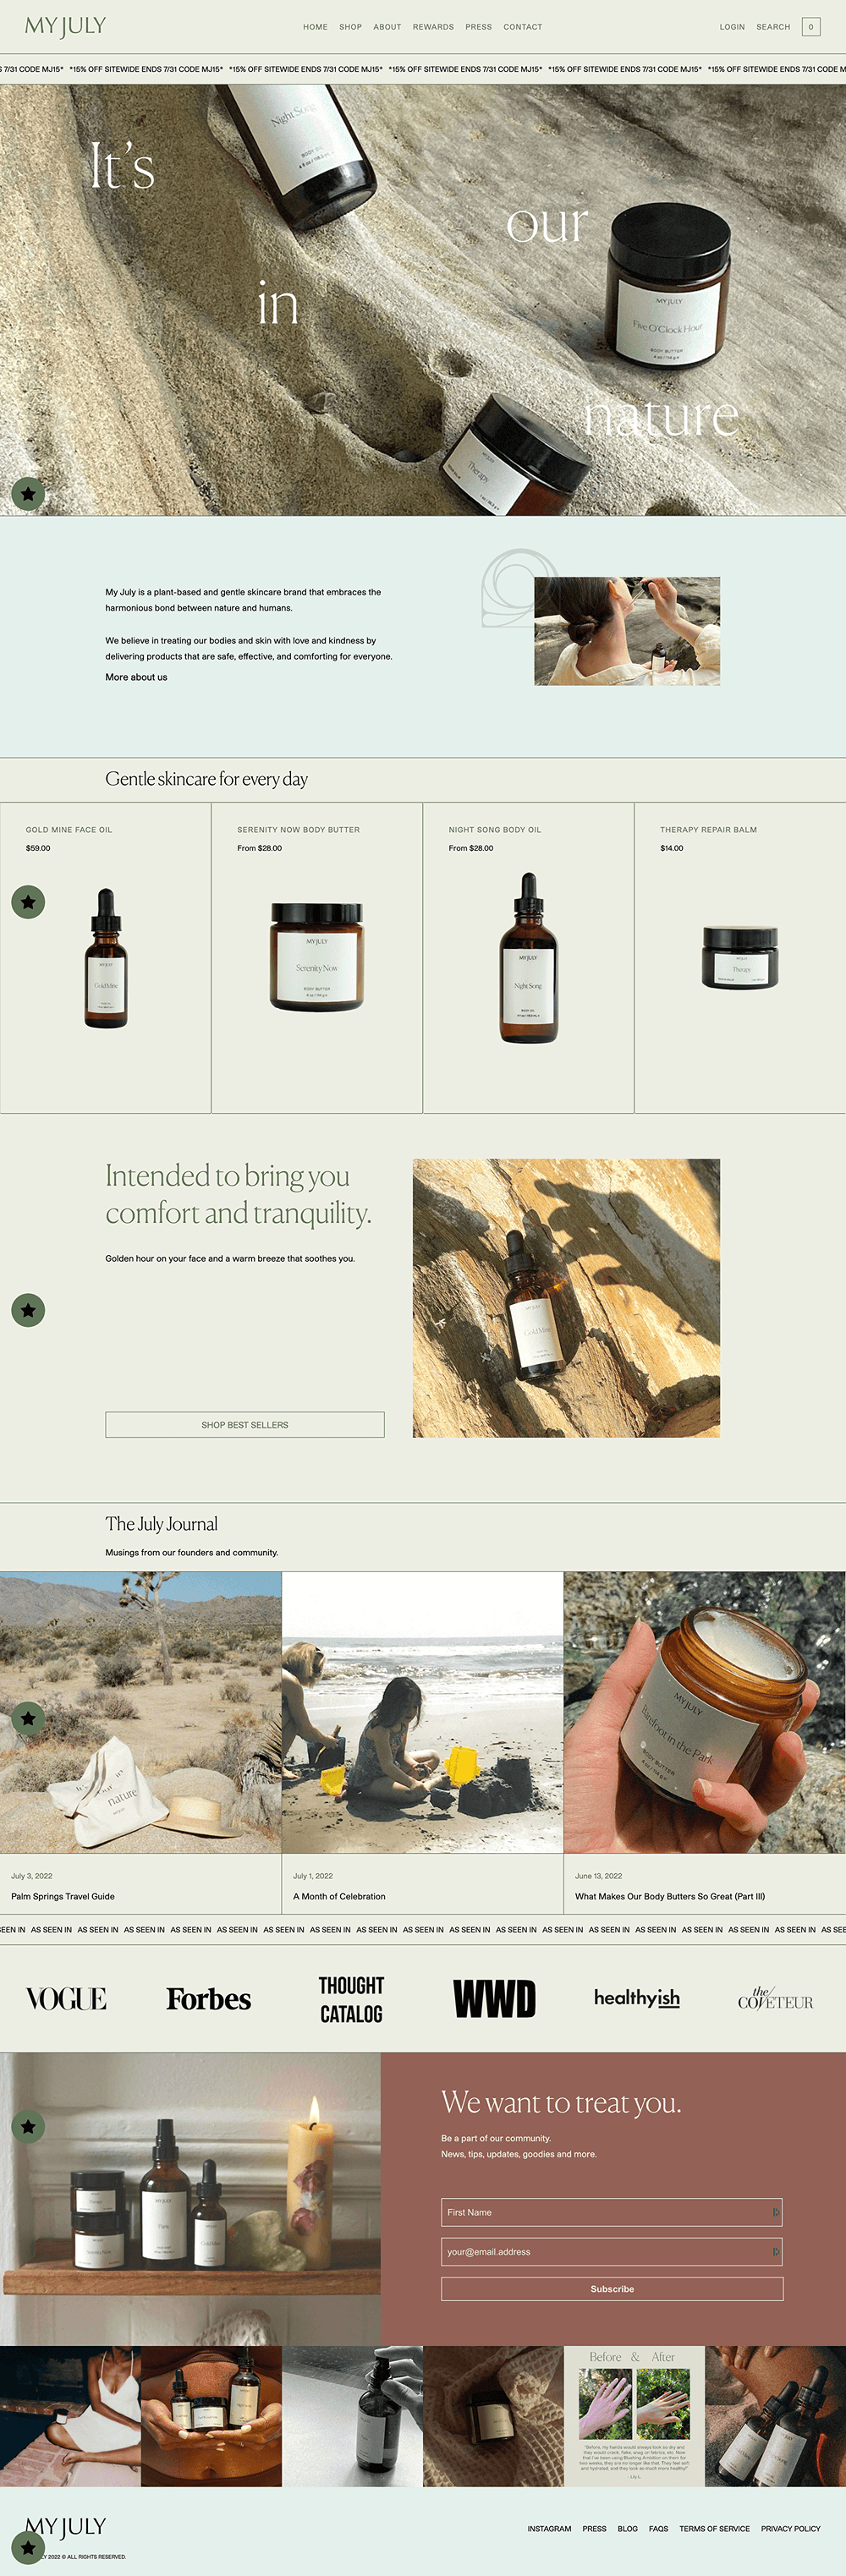 Shopify Website Design Inspiration - My July